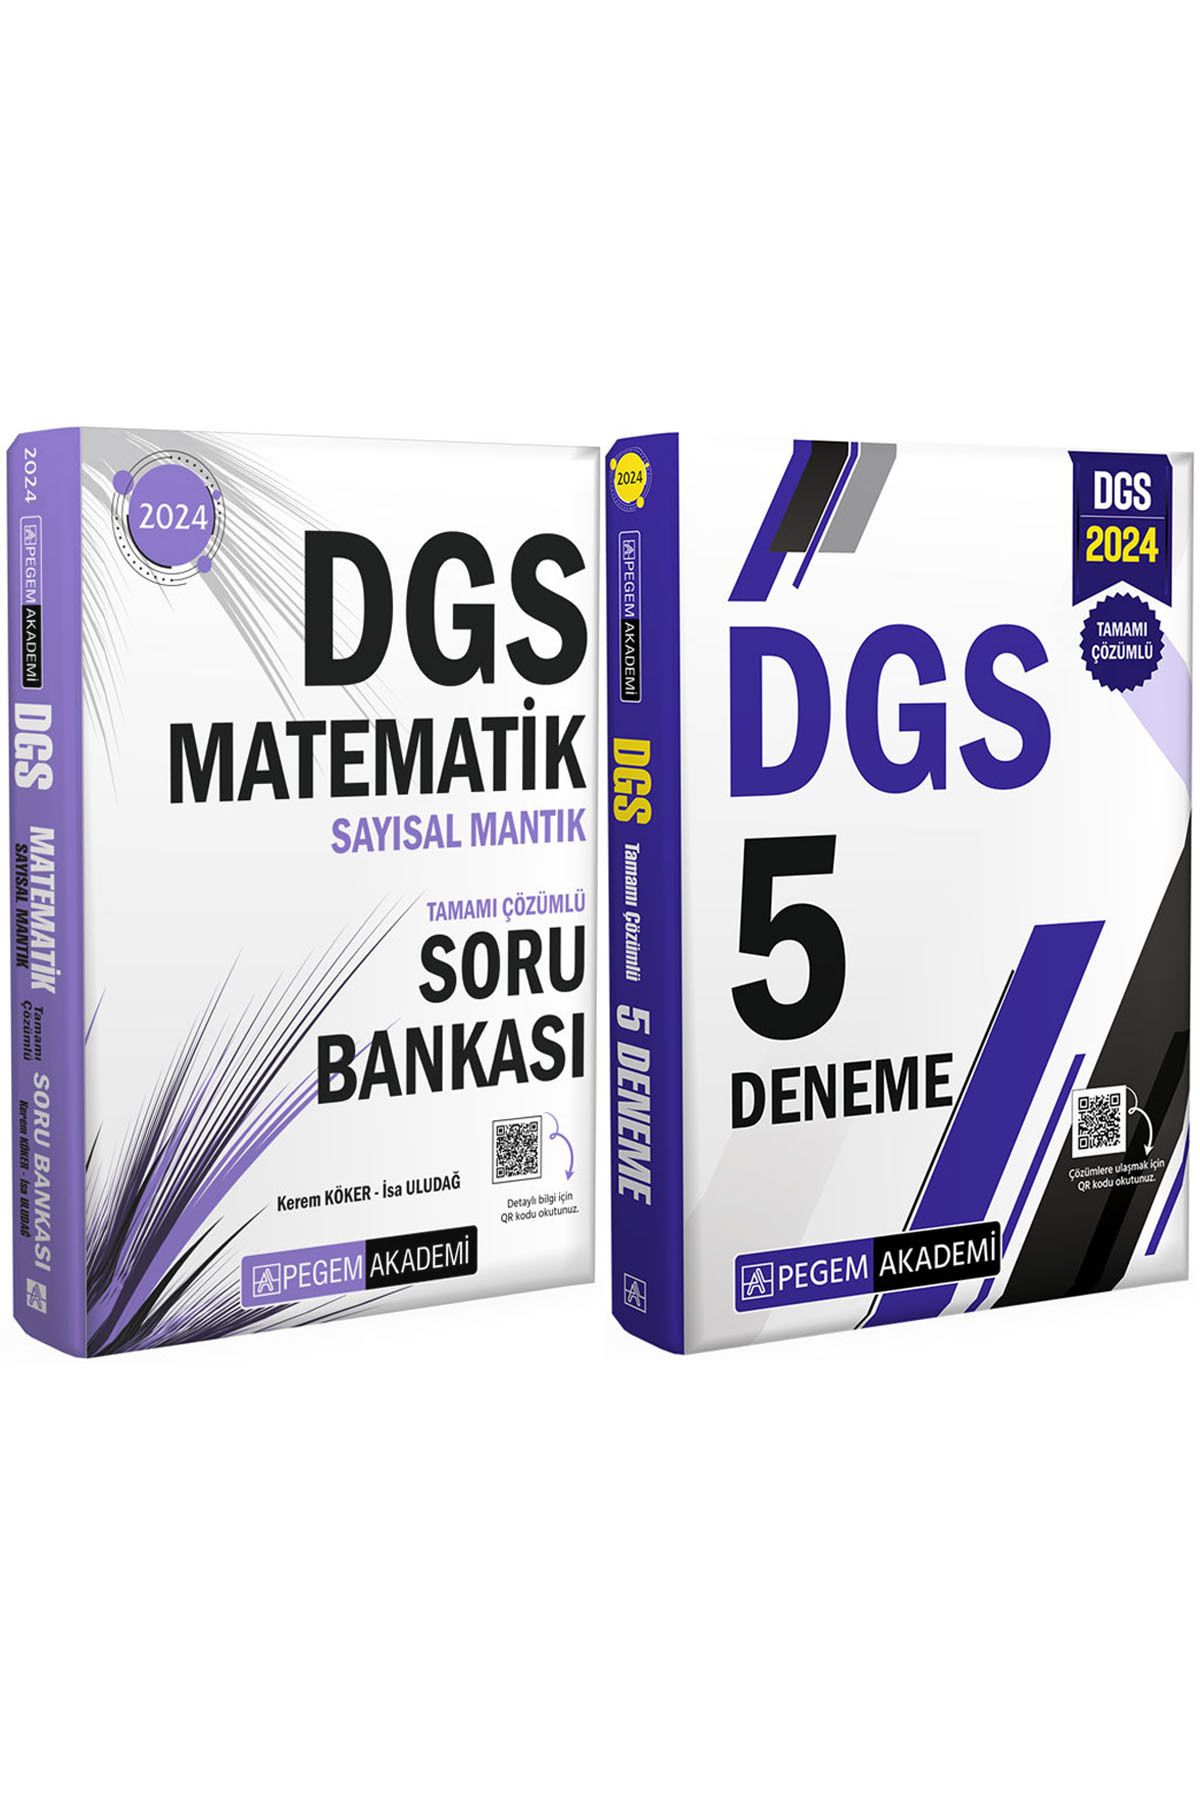 Pegem Akademi Yayıncılık DGS 2024 Tamamı Çözümlü 5 Deneme-Matematik Sayısal Mantık Tamamı Çözümlü Soru Bankası